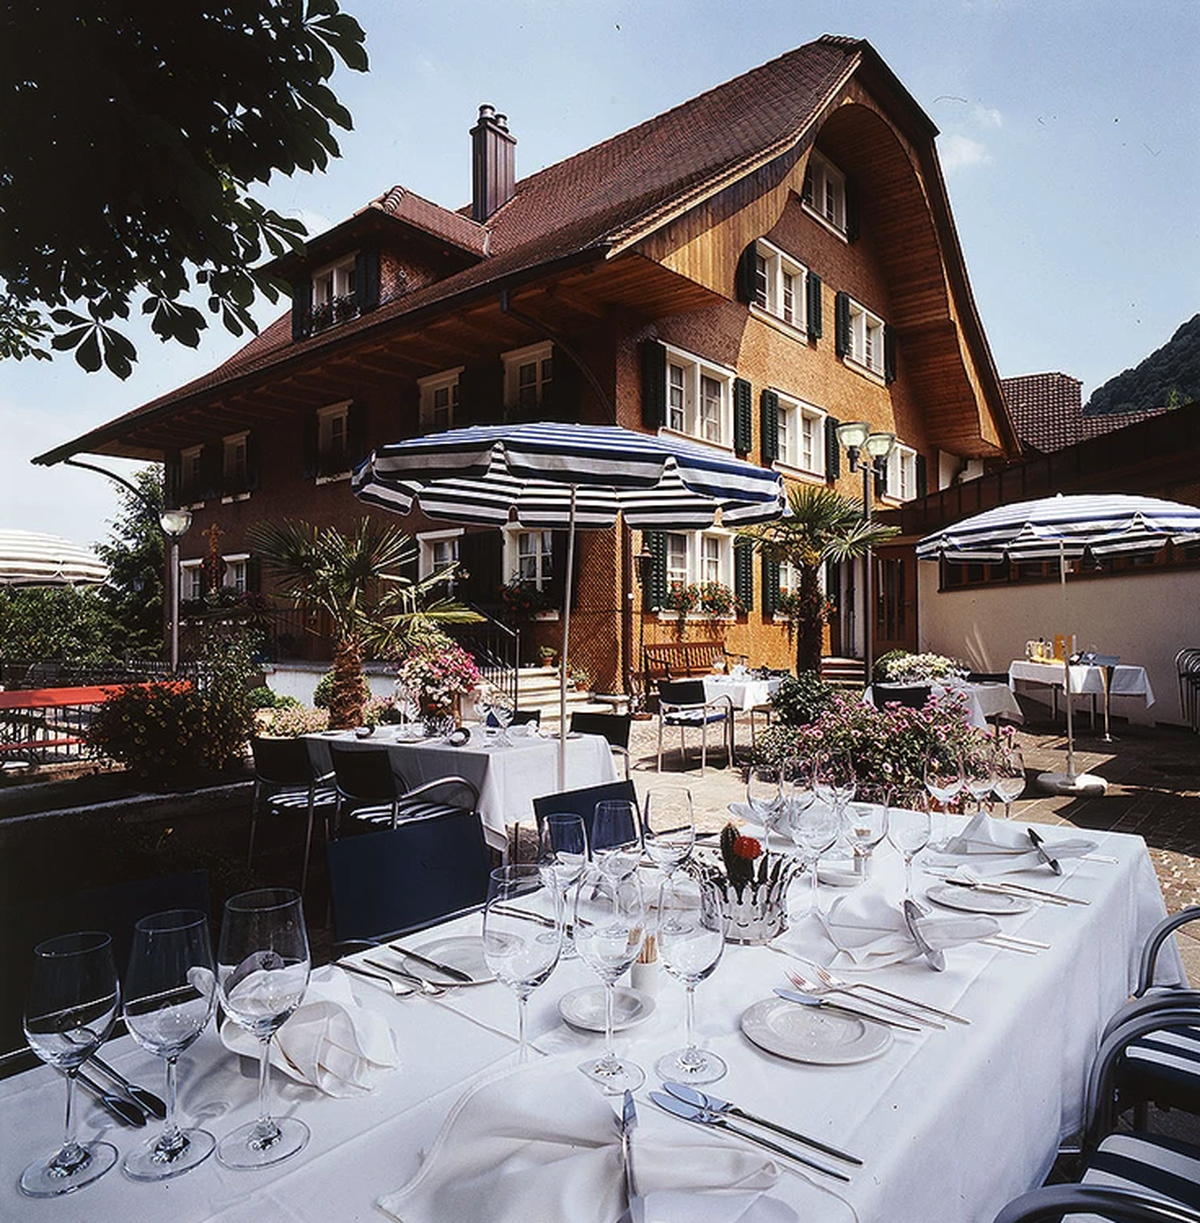 Der Gasthof Kronen Blatten bietet Platz für rund 160 Gäste. Die Hälfte davon unter freiem Himmel in der Gartenanlage.